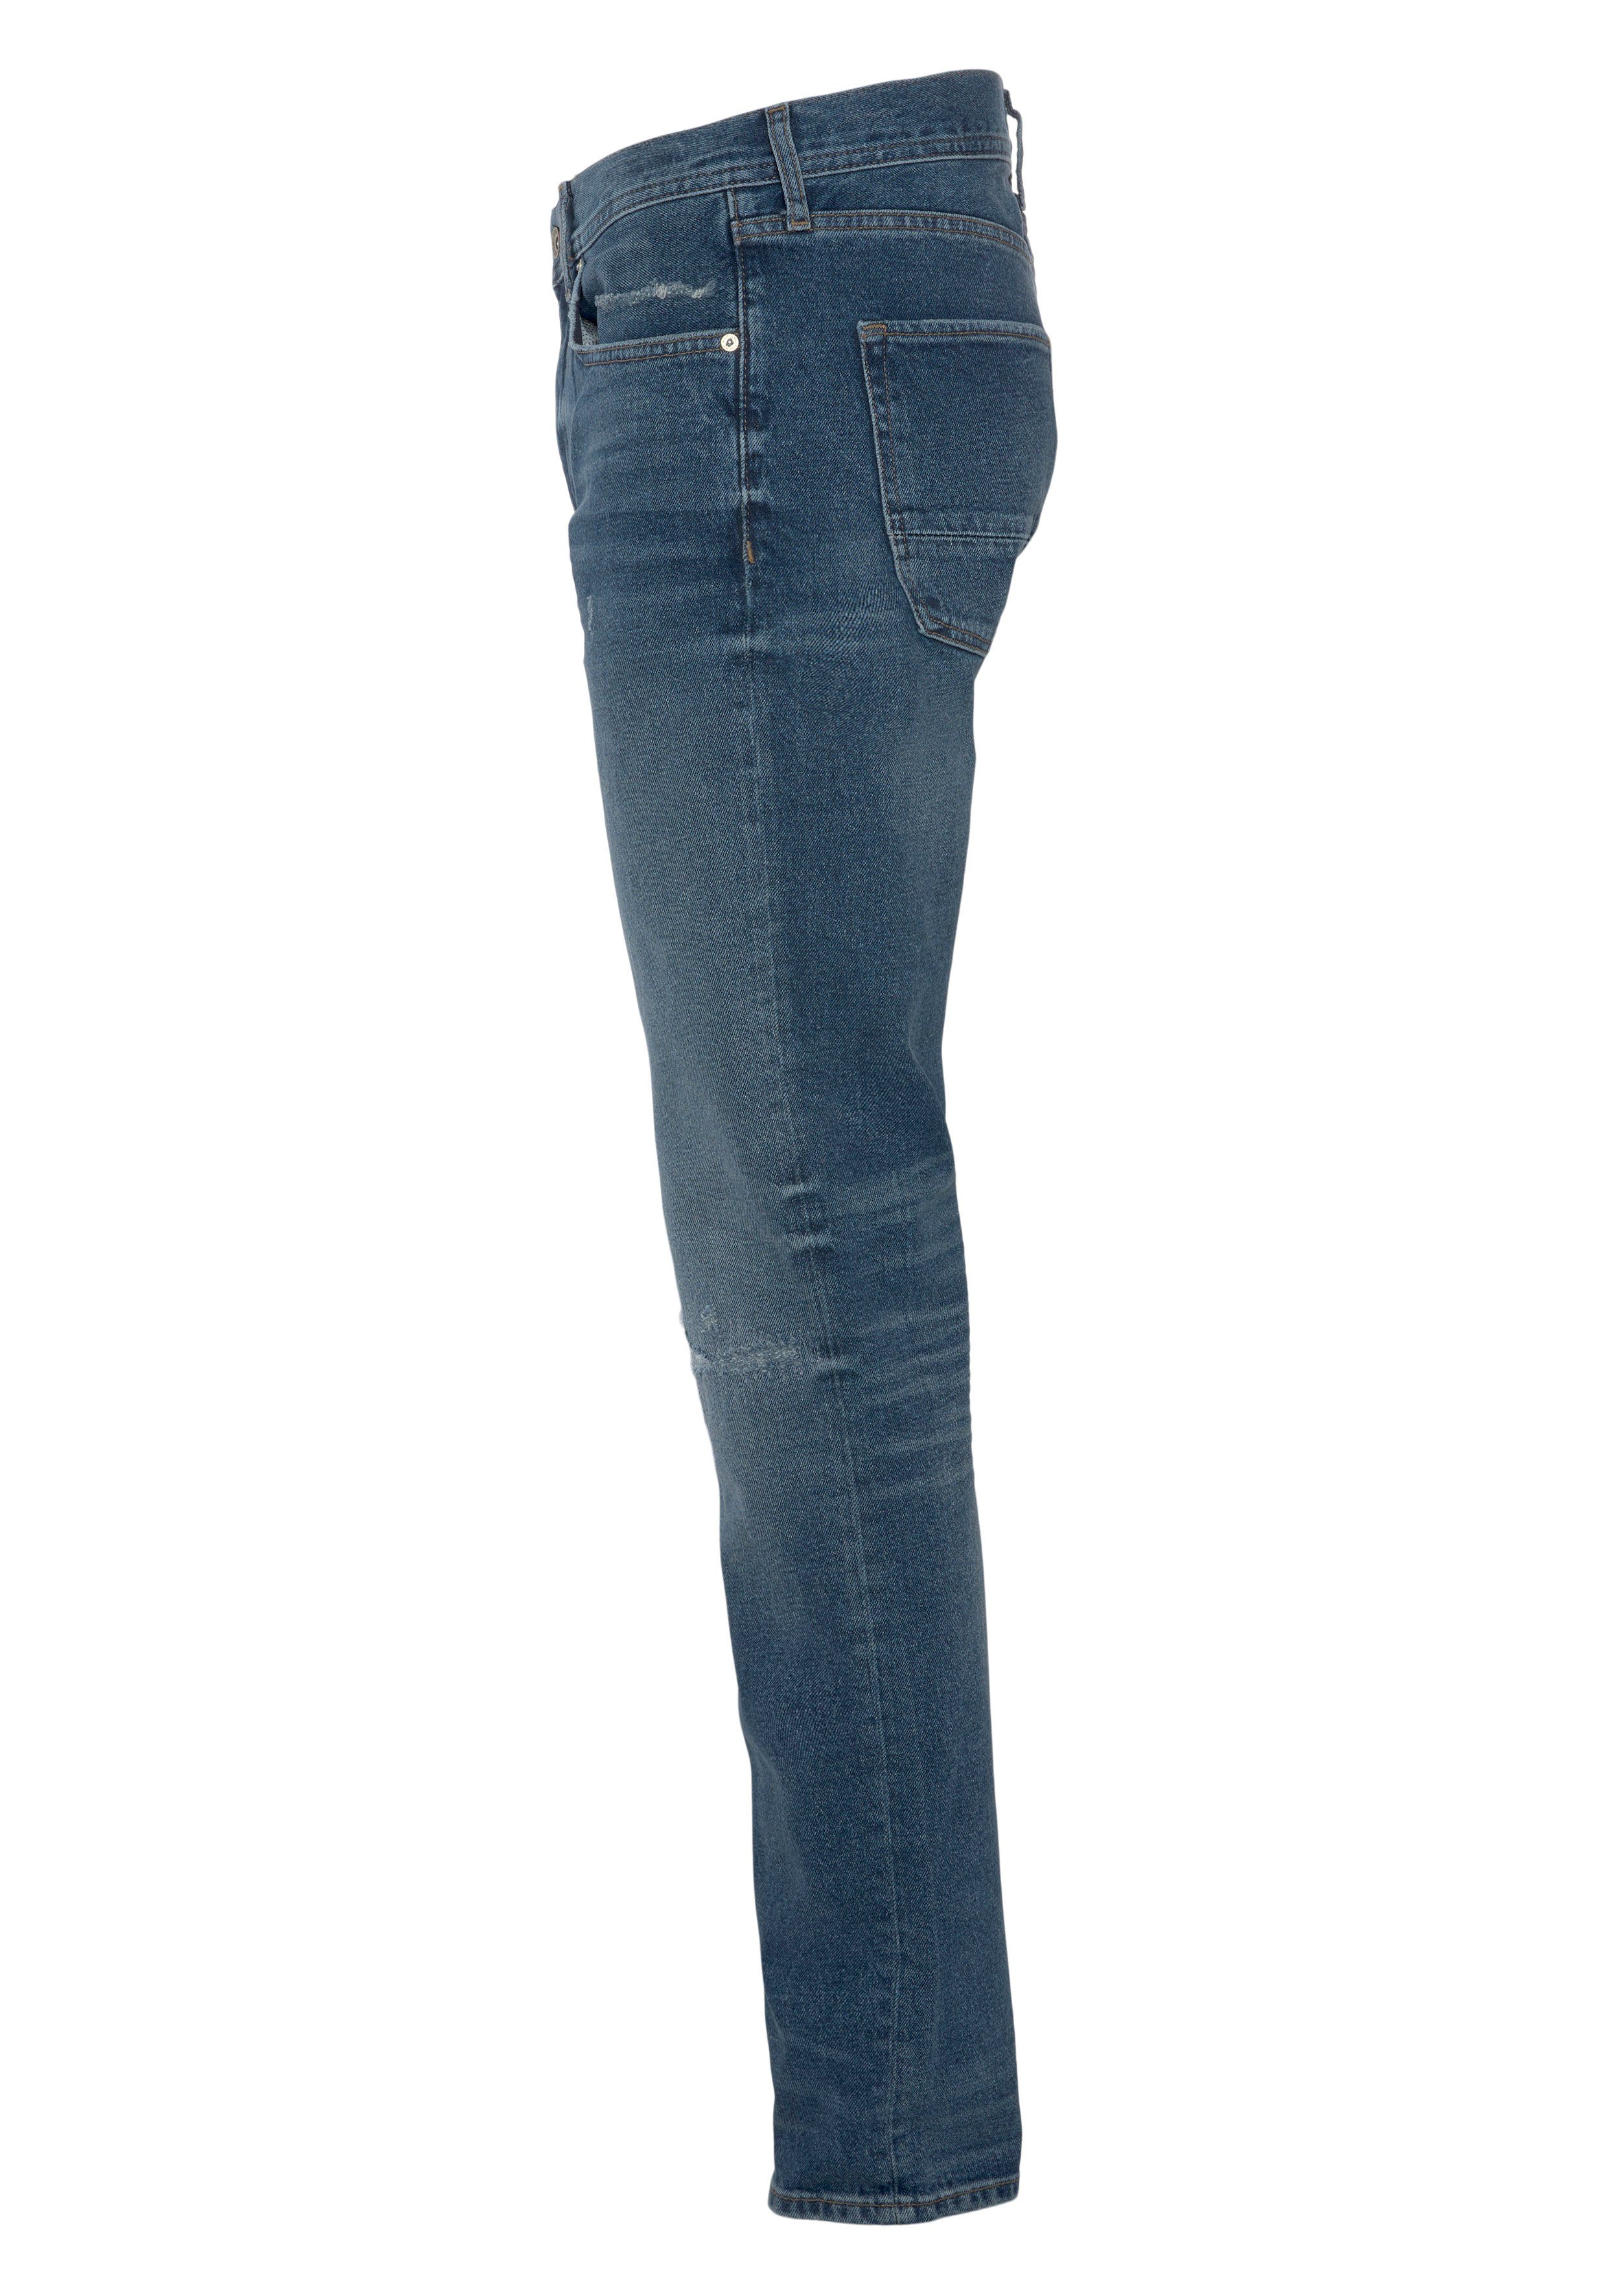 Tommy Hilfiger am Riss mit Knie Destroyed-Jeans STRAIGHT REPAIR four y.repai linken 4YRS DENTON STR